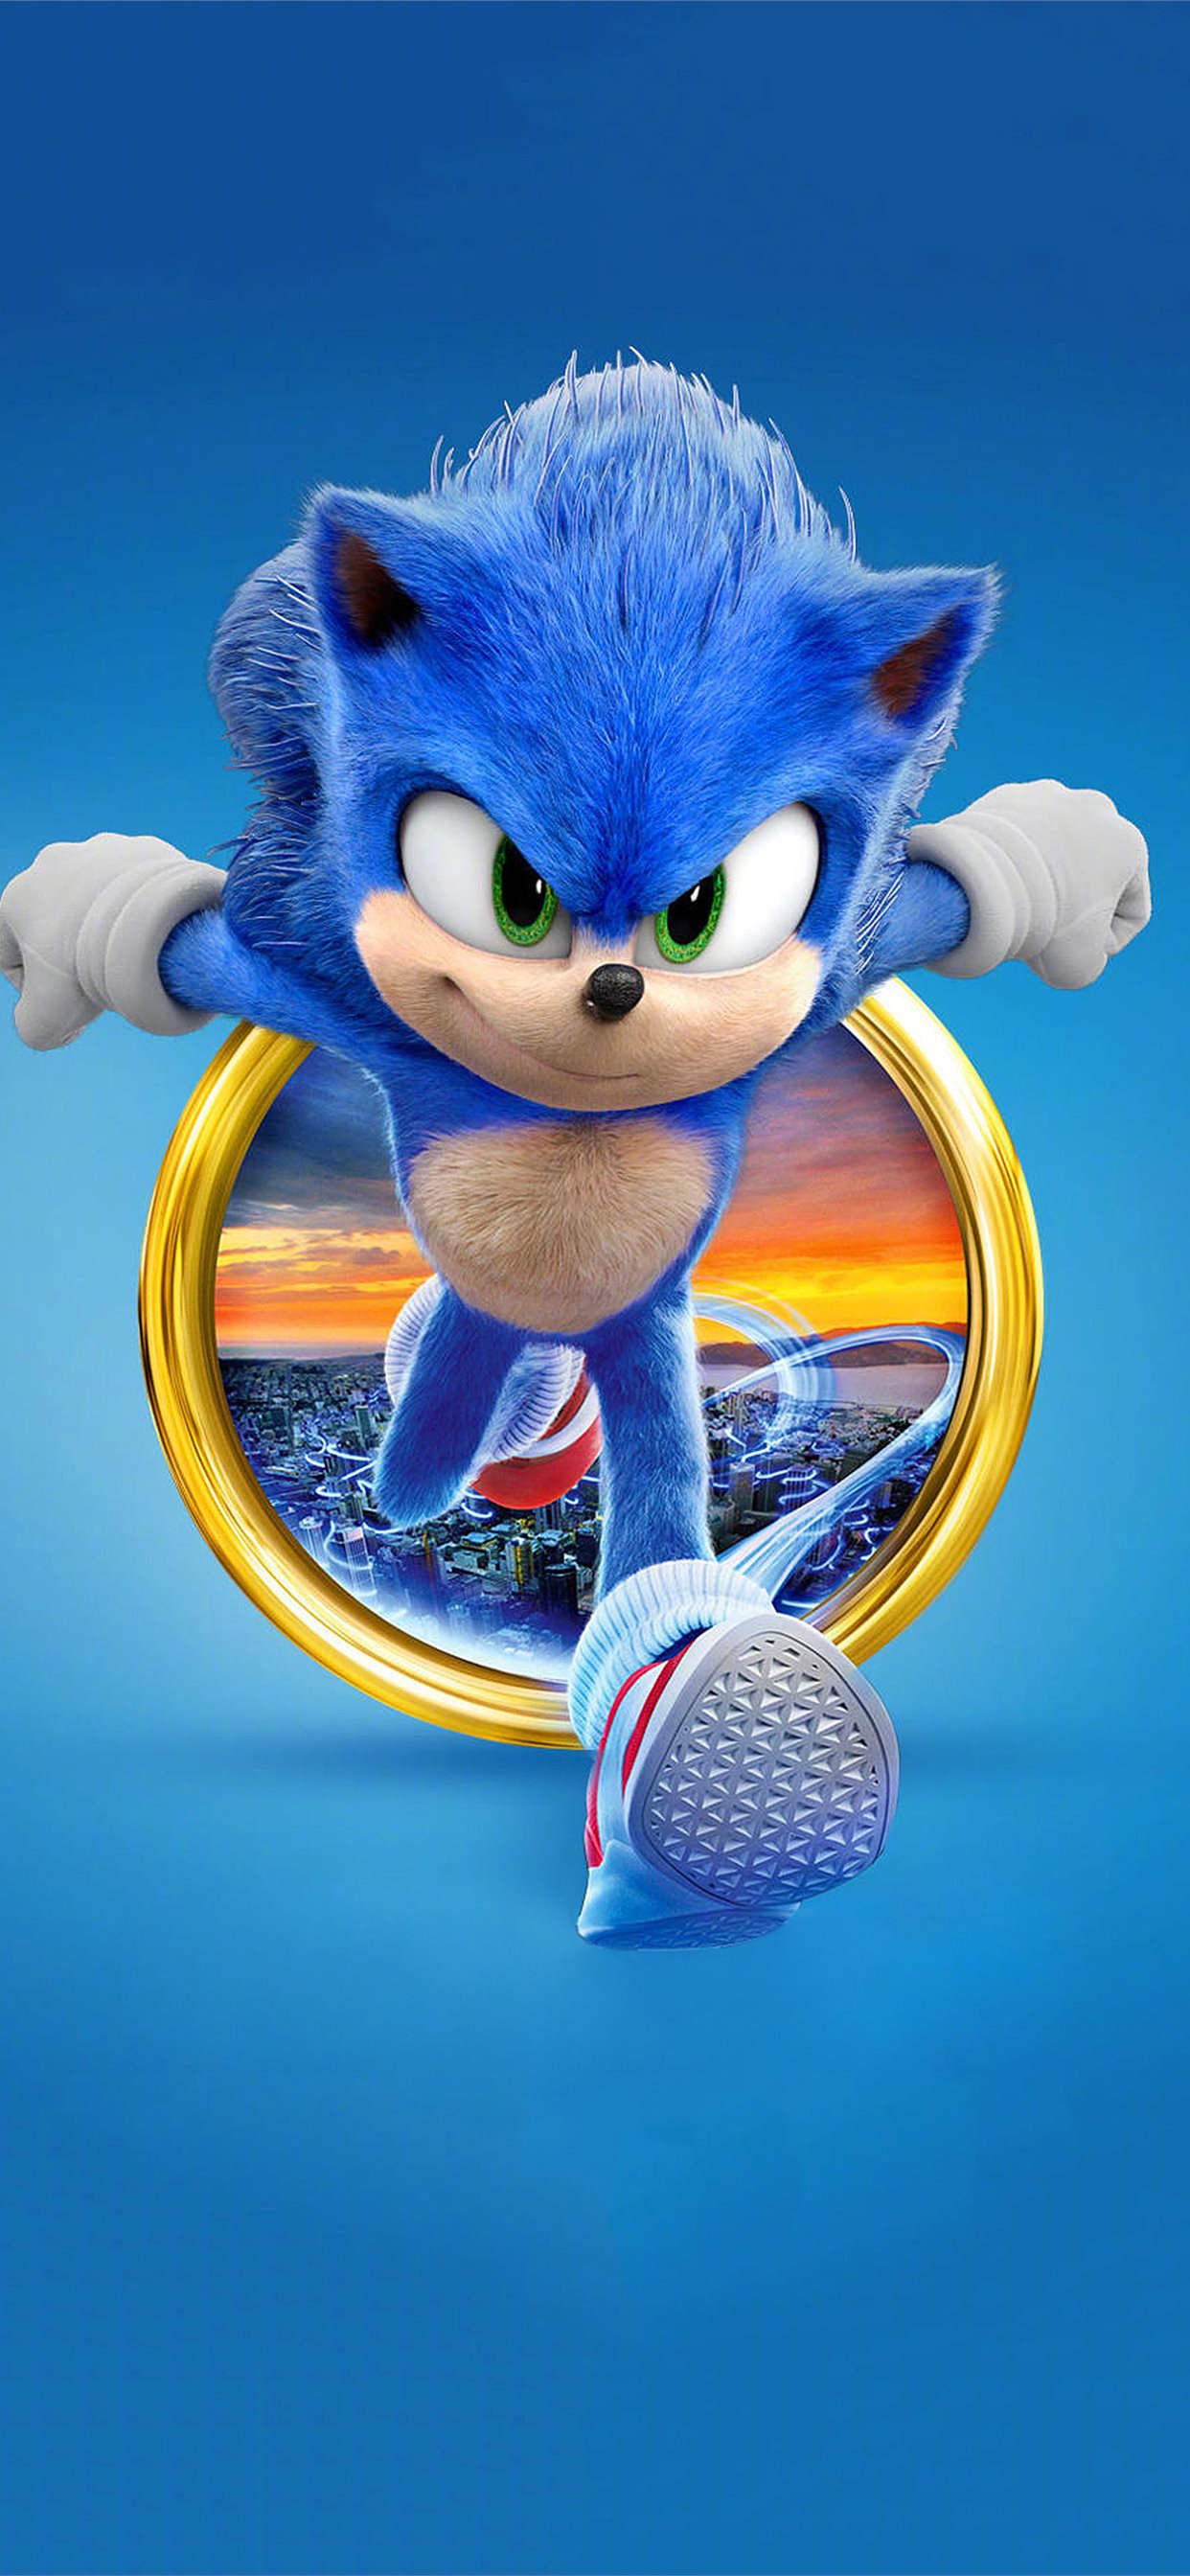 Với tốc độ siêu âm và cách làm phi thường, Sonic chắc chắn là một trong những nhân vật yêu thích nhất của bạn. Hãy xem bức hình liên quan để không bỏ lỡ bất kỳ chi tiết nào về chàng nhím tinh nghịch này.